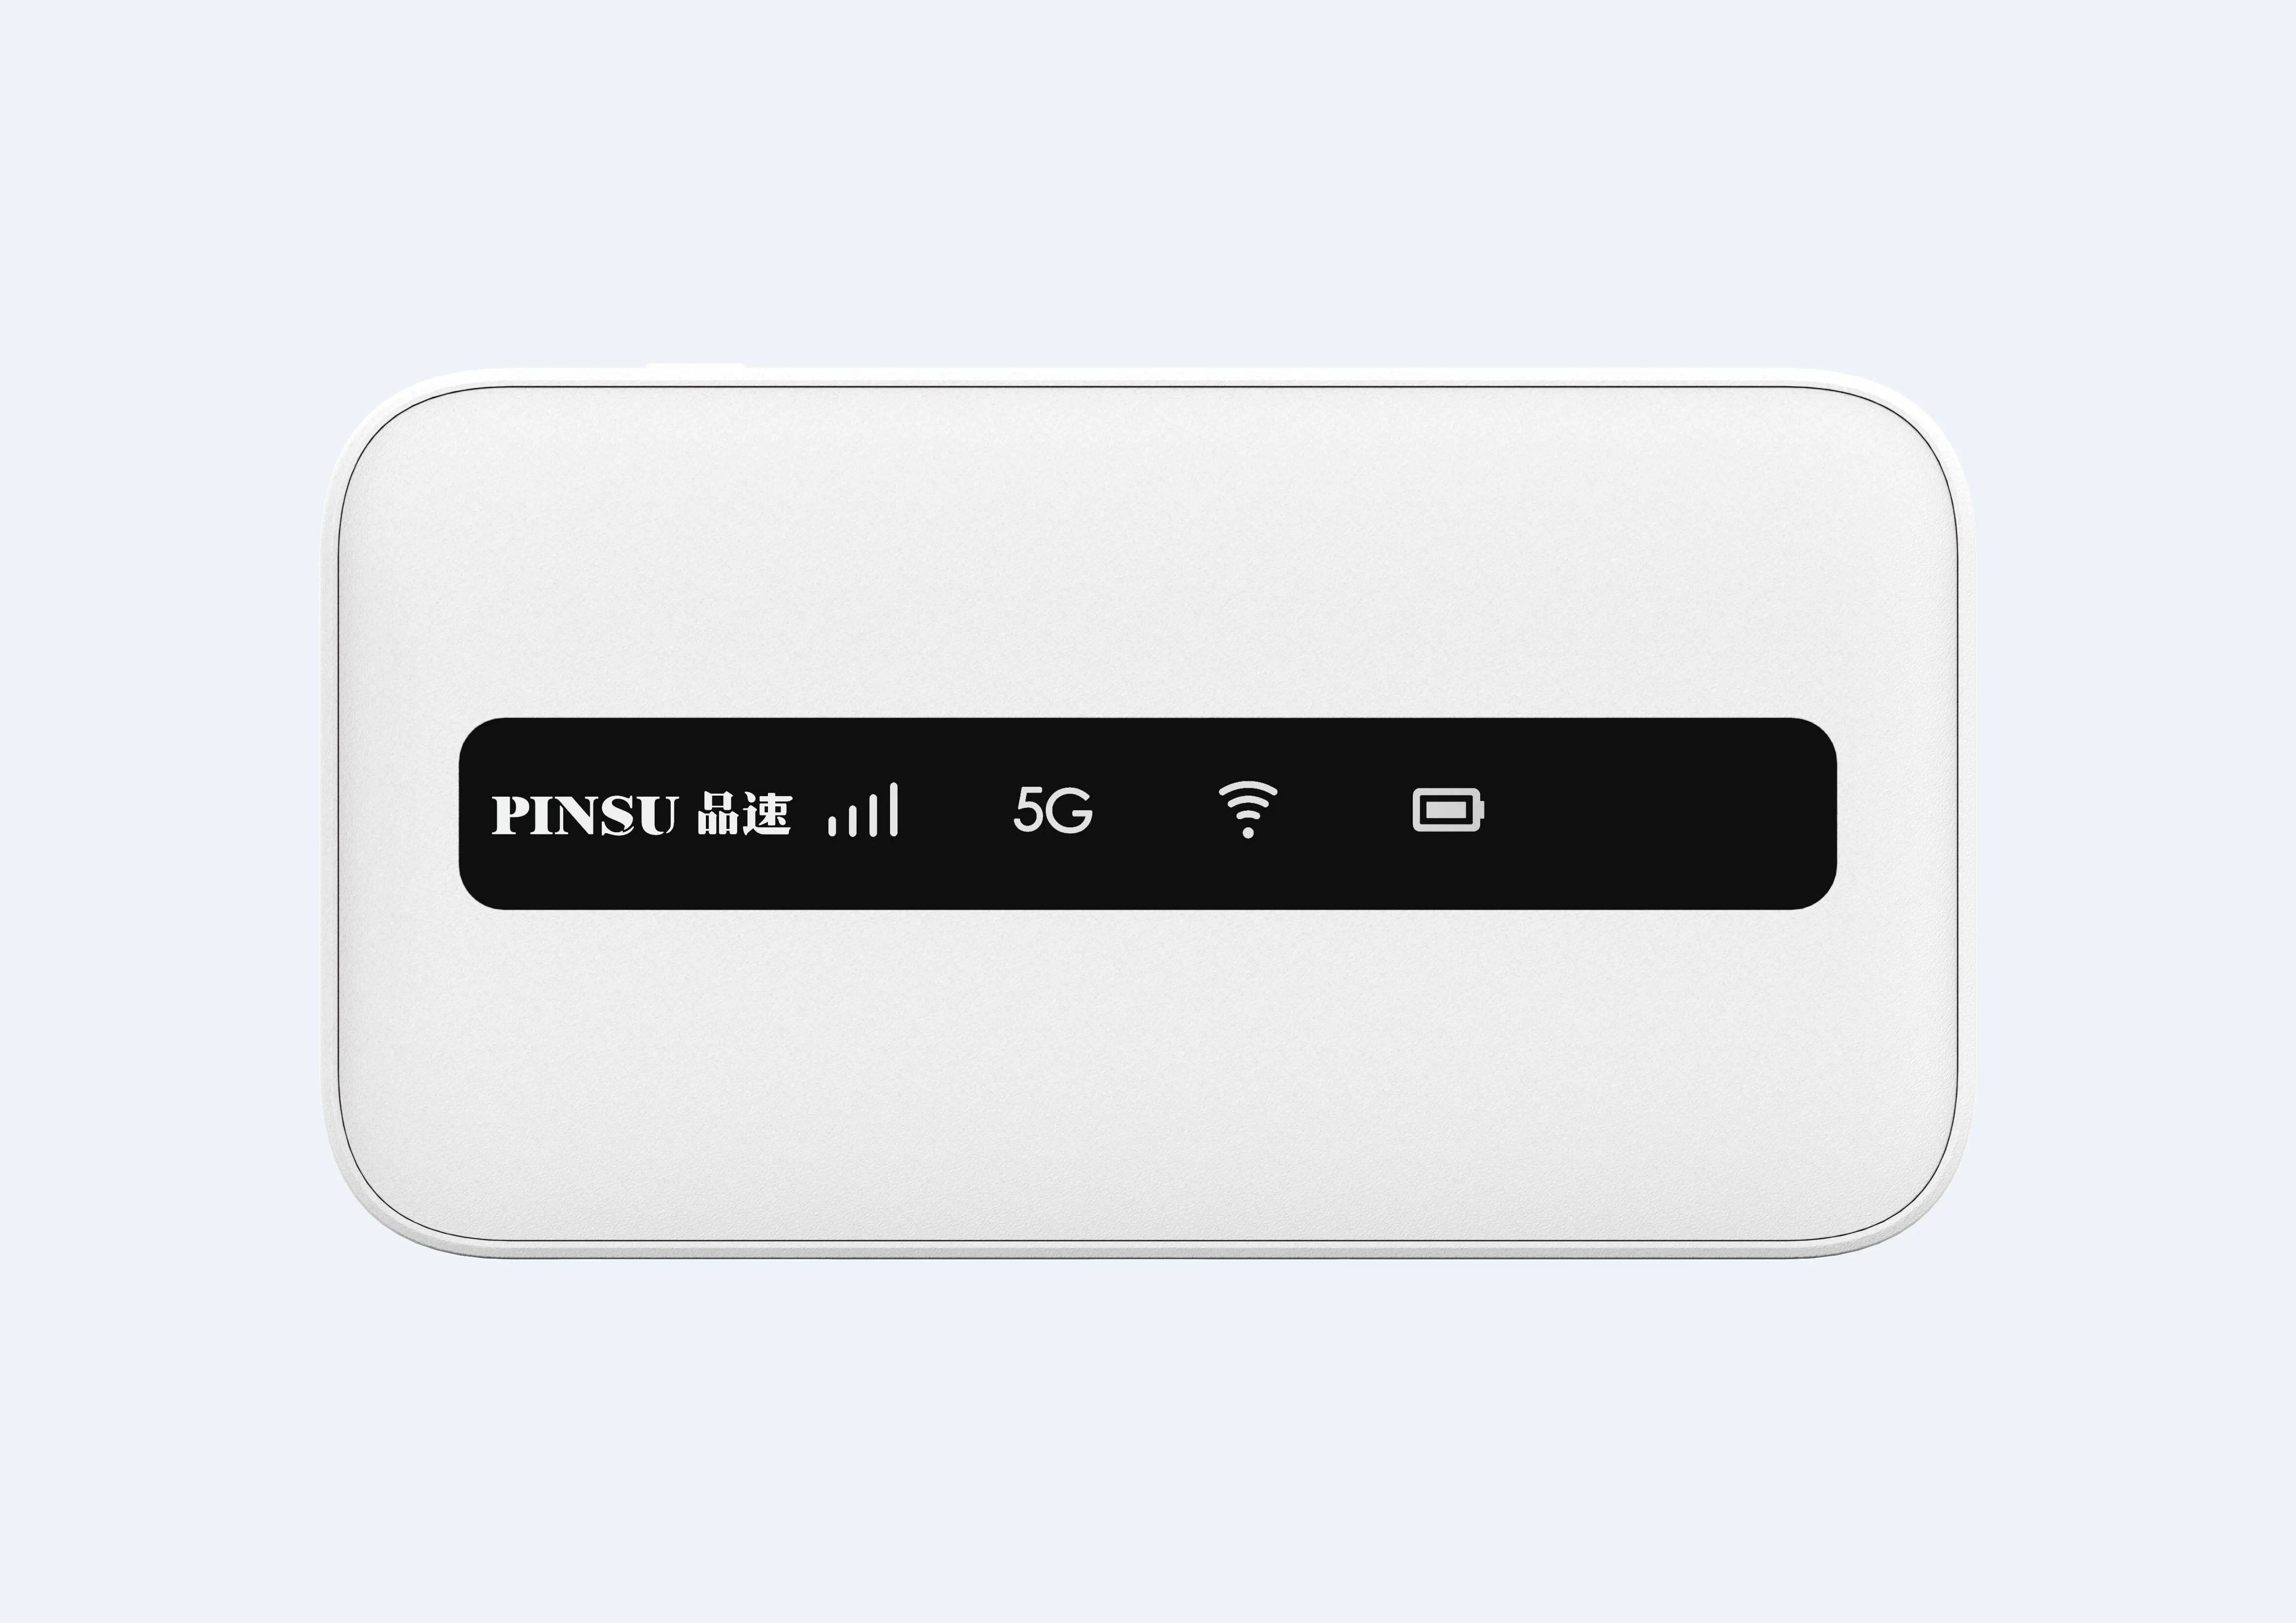 PINSU-rúter móvil R100 con WiFi 6, dispositivo de doble núcleo NSA + SA, 5G, con tarjeta SIM, batería de 3600 mAh, modo Qualcomm SDX55, desbloqueado